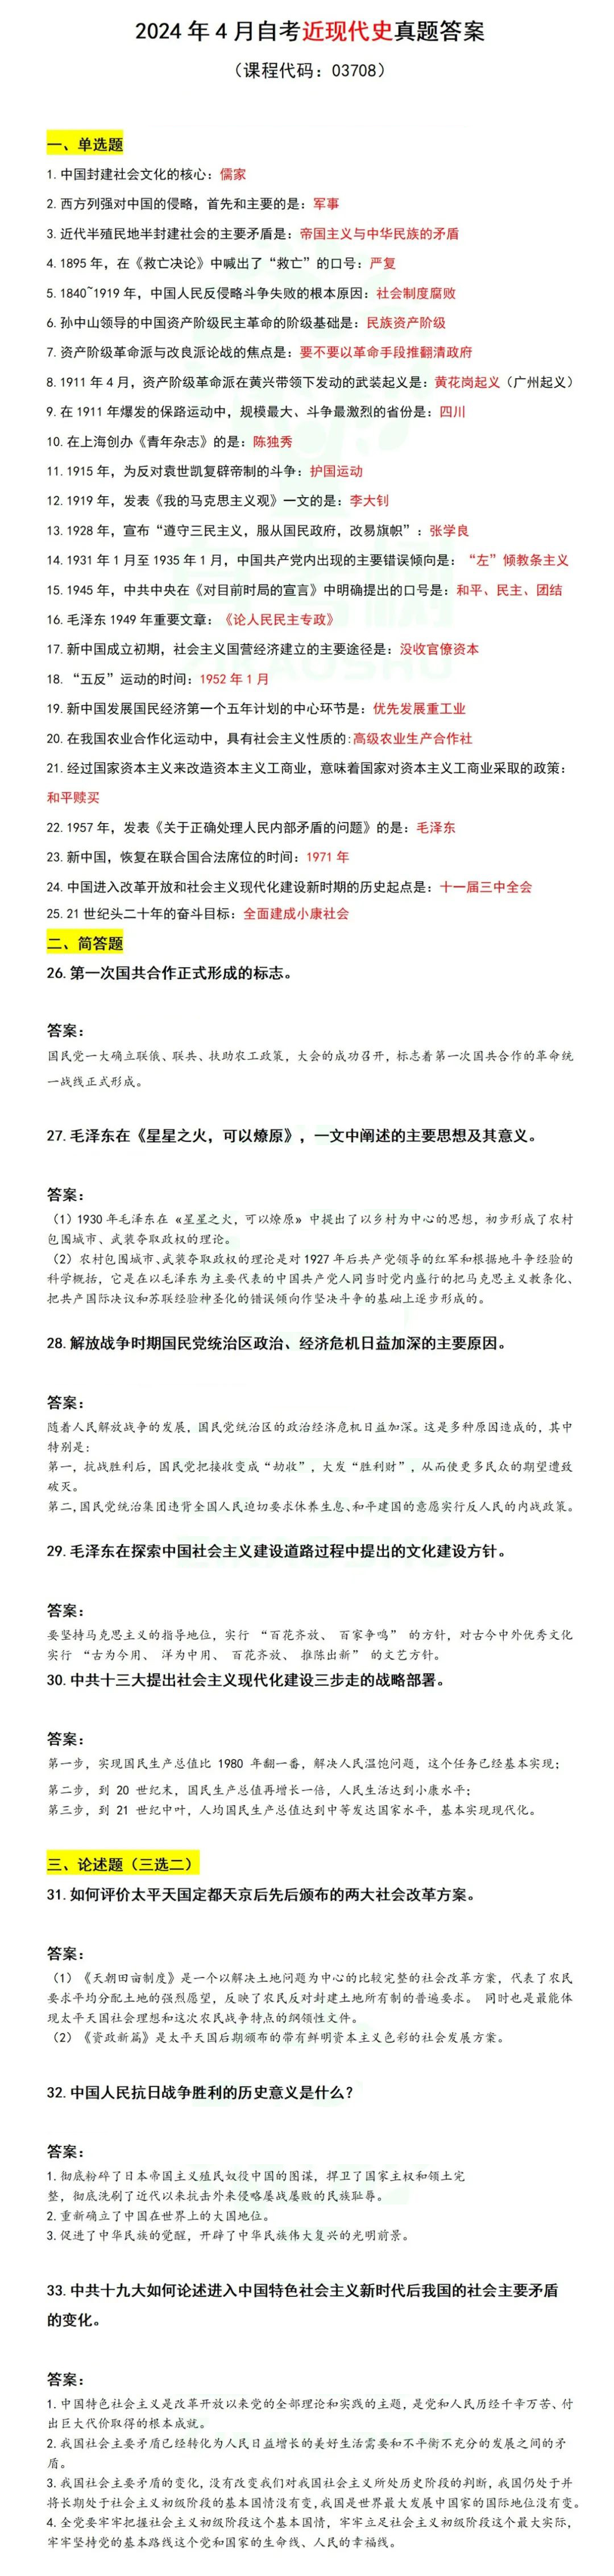 2024年上半年上海自考《中国近现代史纲要》真题及答案解析.jpg